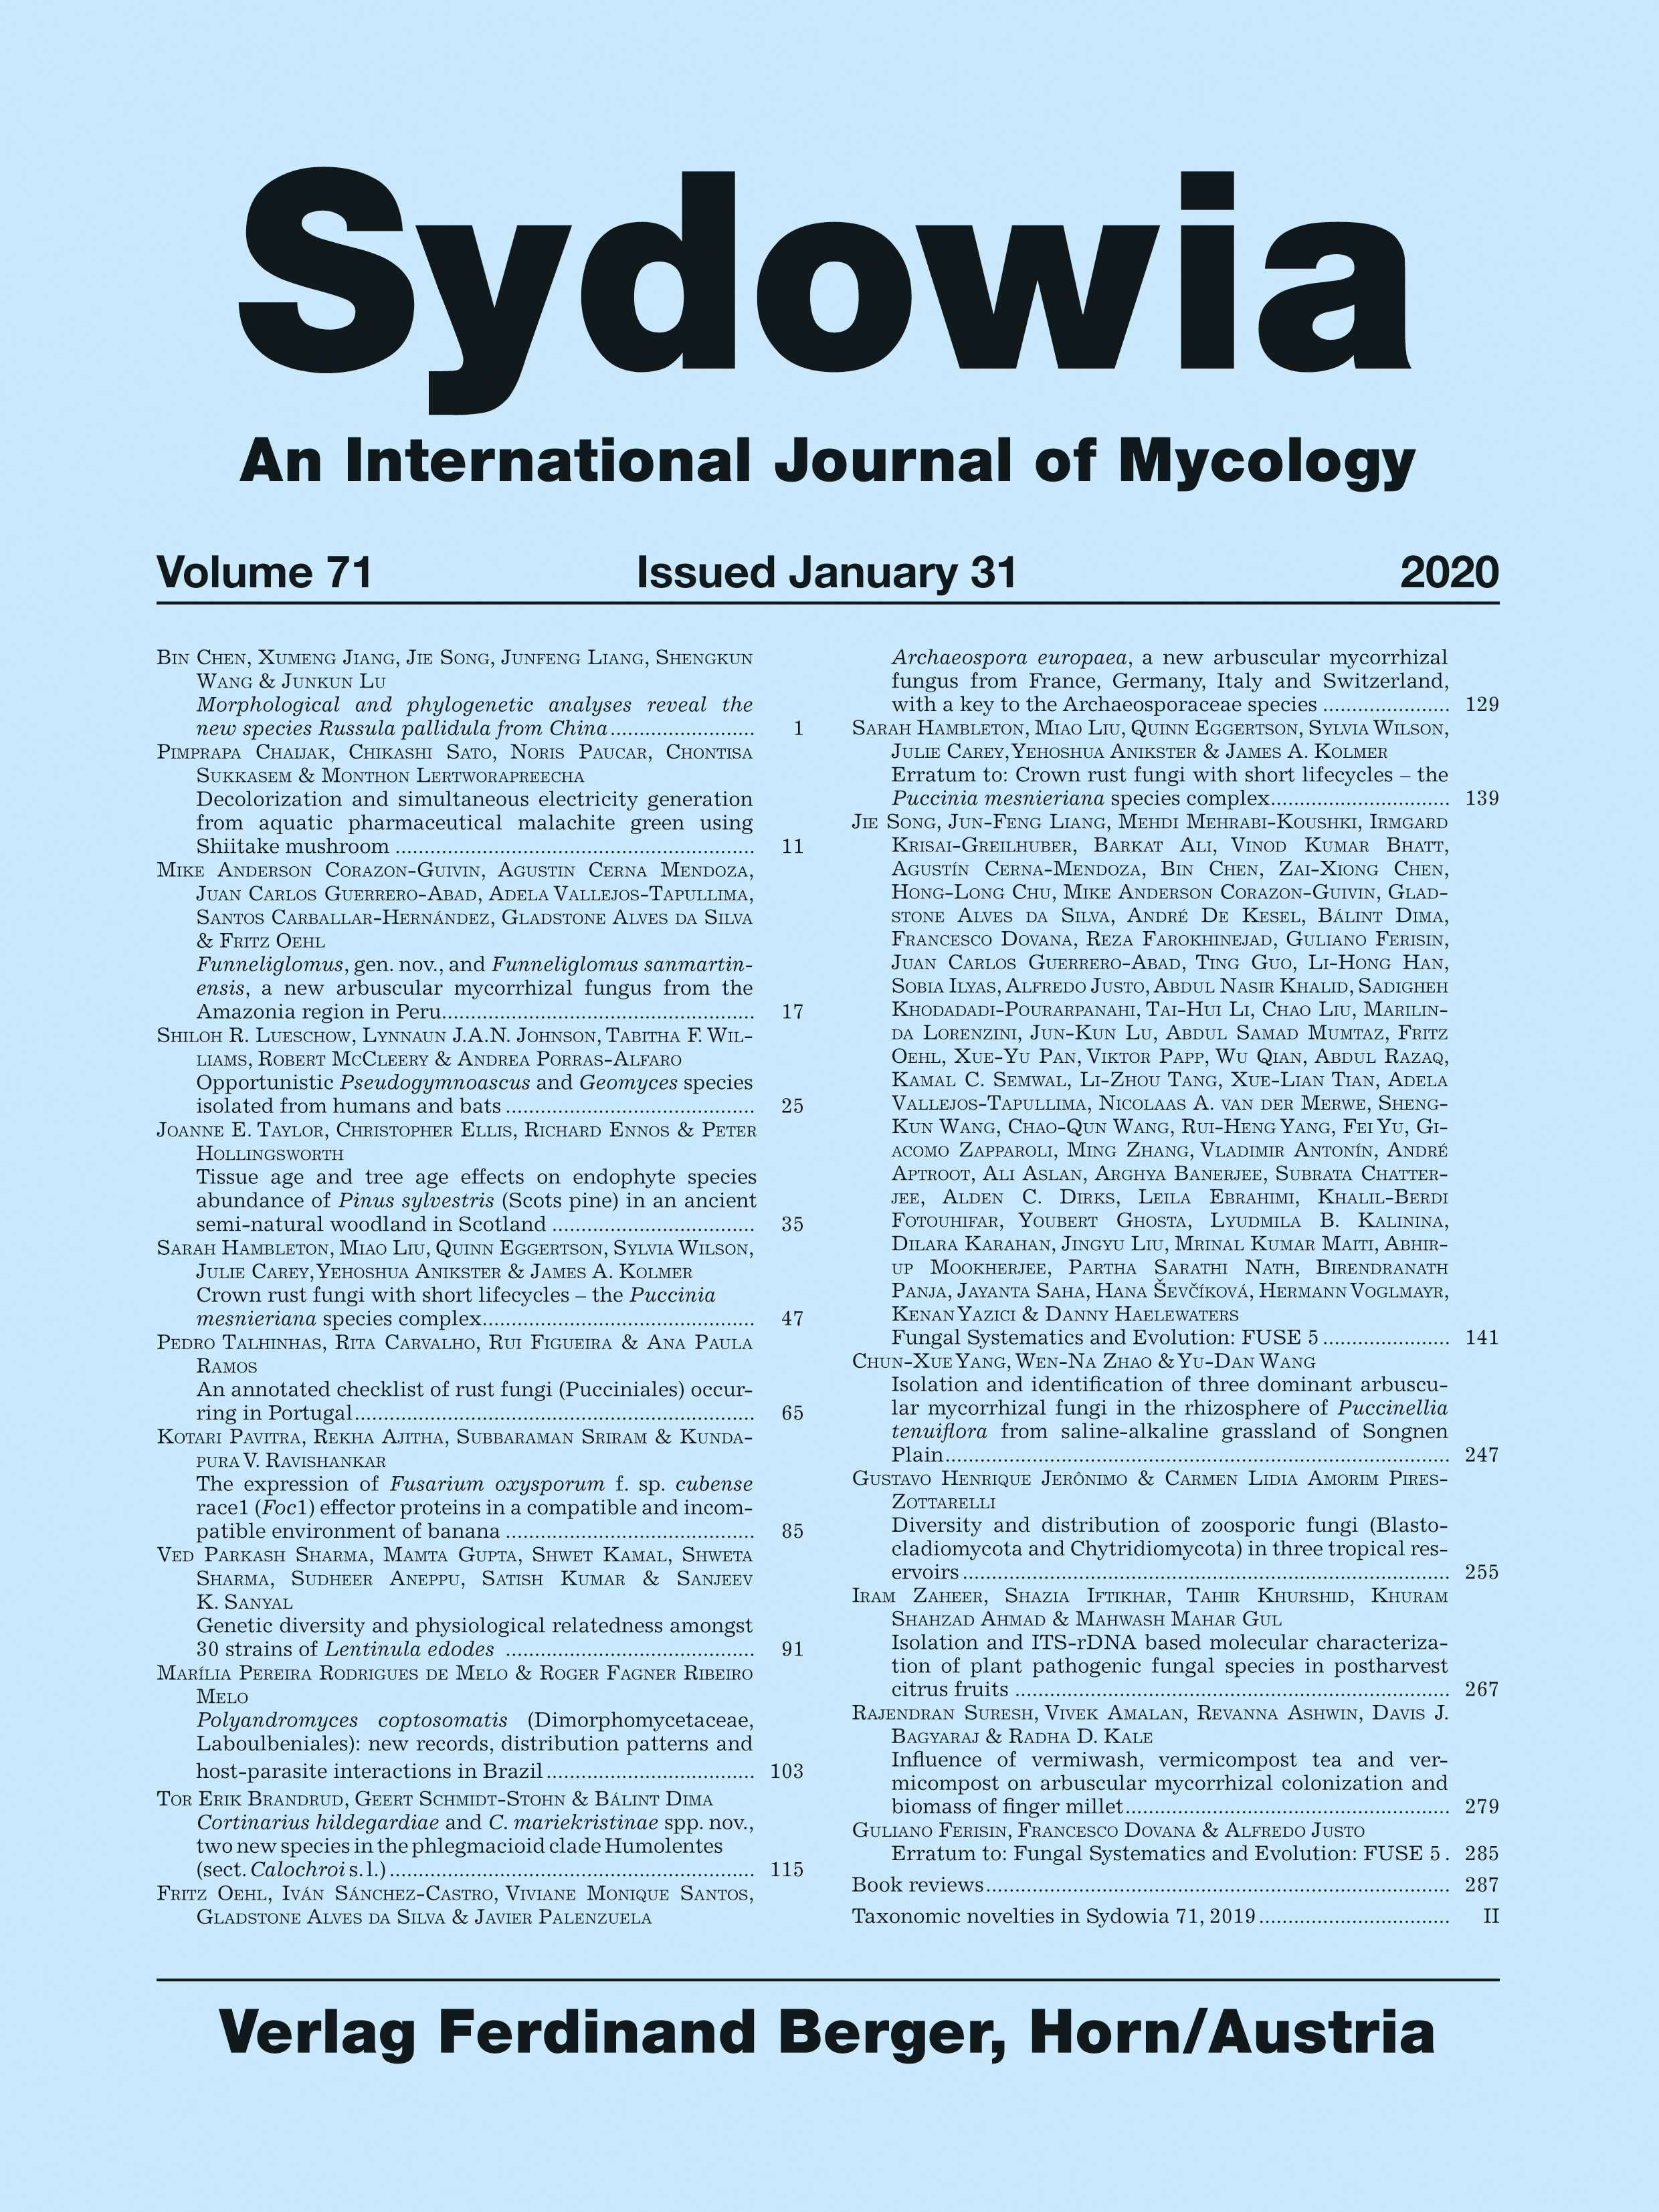 Sydowia Vol. 71 E-Book/S 141-245 OPEN ACCESS